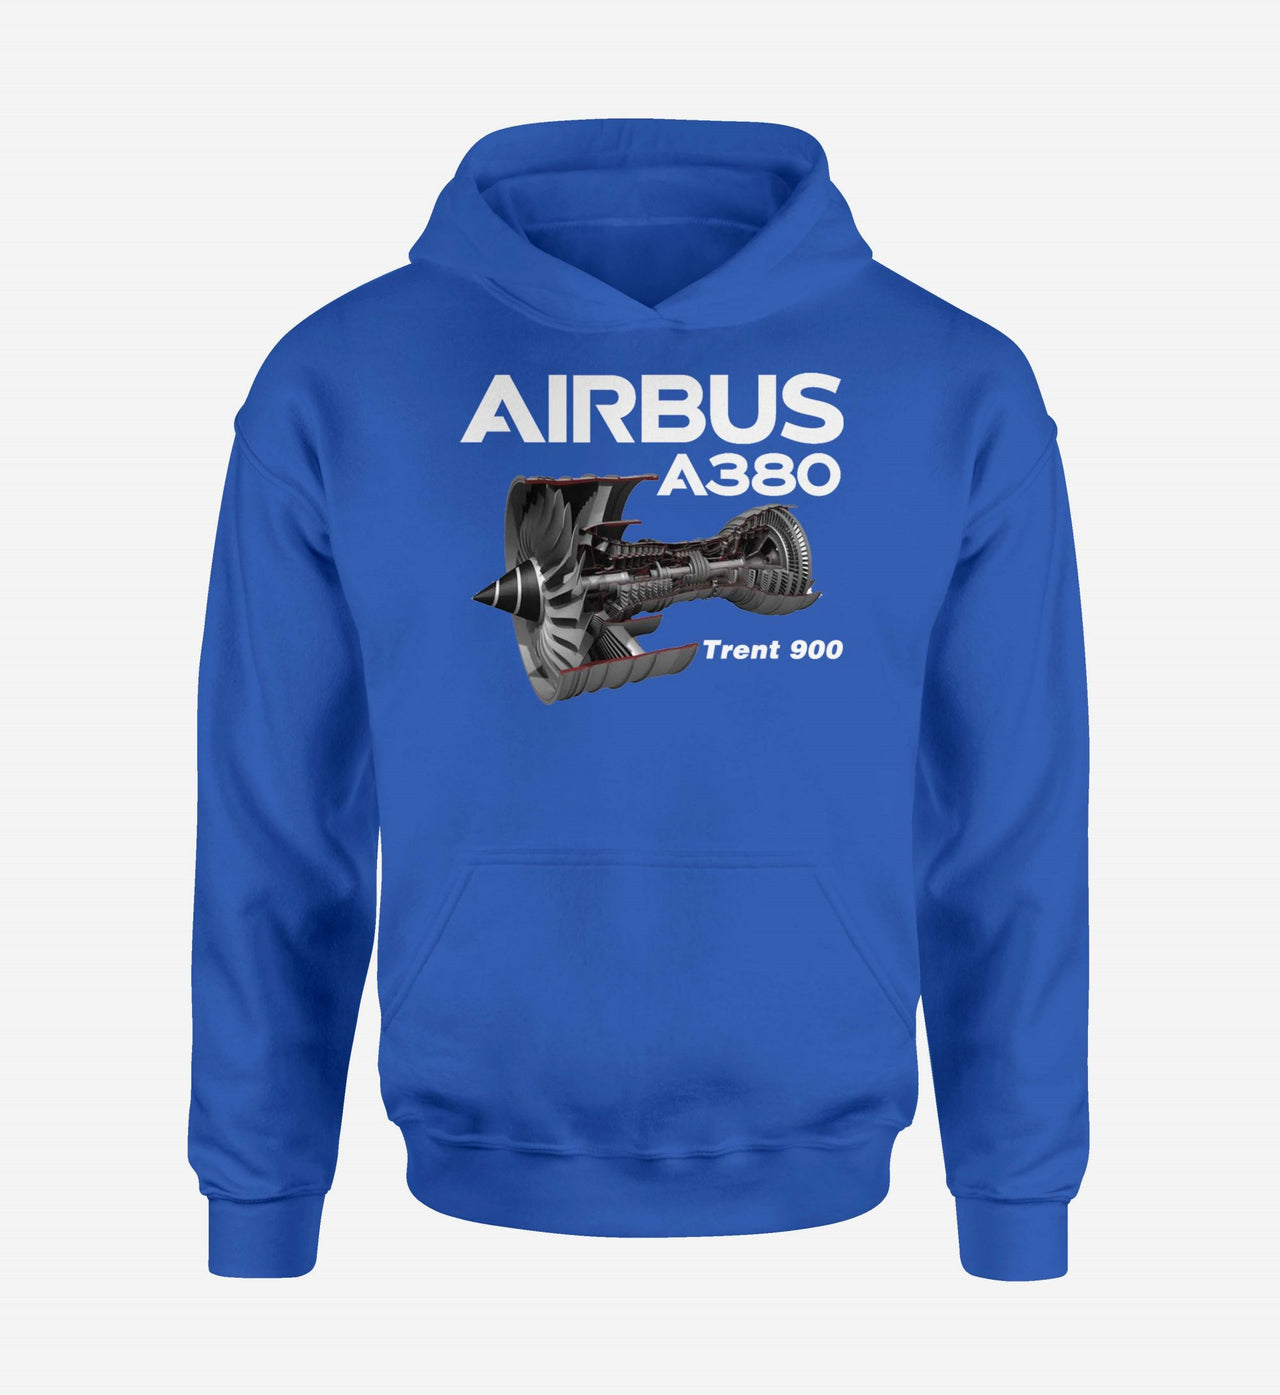 Airbus A380 & Trent 900 Engine Designed Hoodies